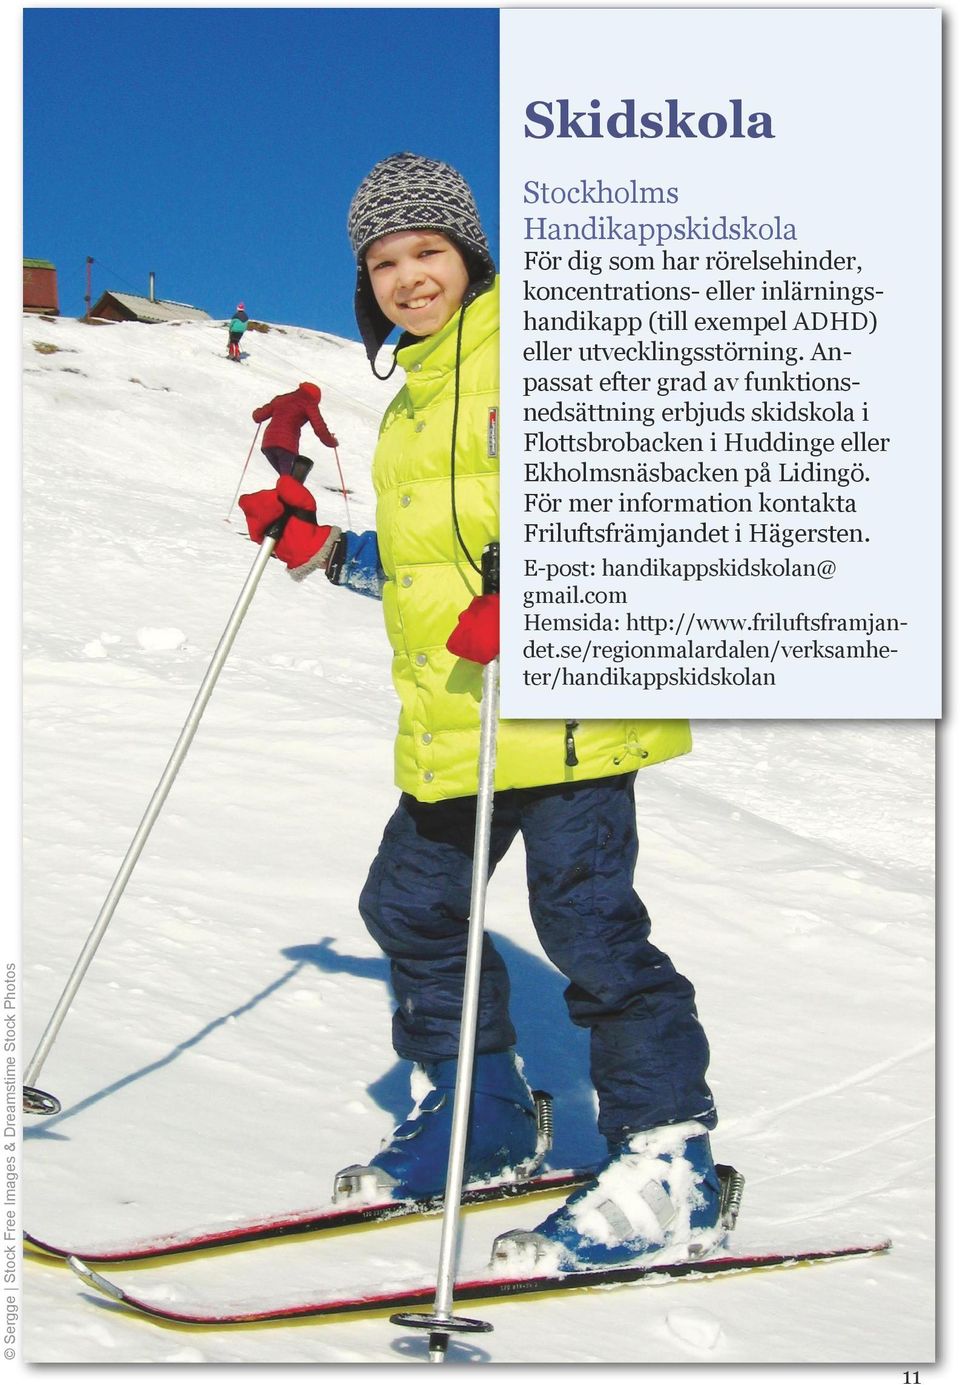 Anpassat efter grad av funktionsnedsättning erbjuds skidskola i Flottsbrobacken i Huddinge eller Ekholmsnäsbacken på Lidingö.